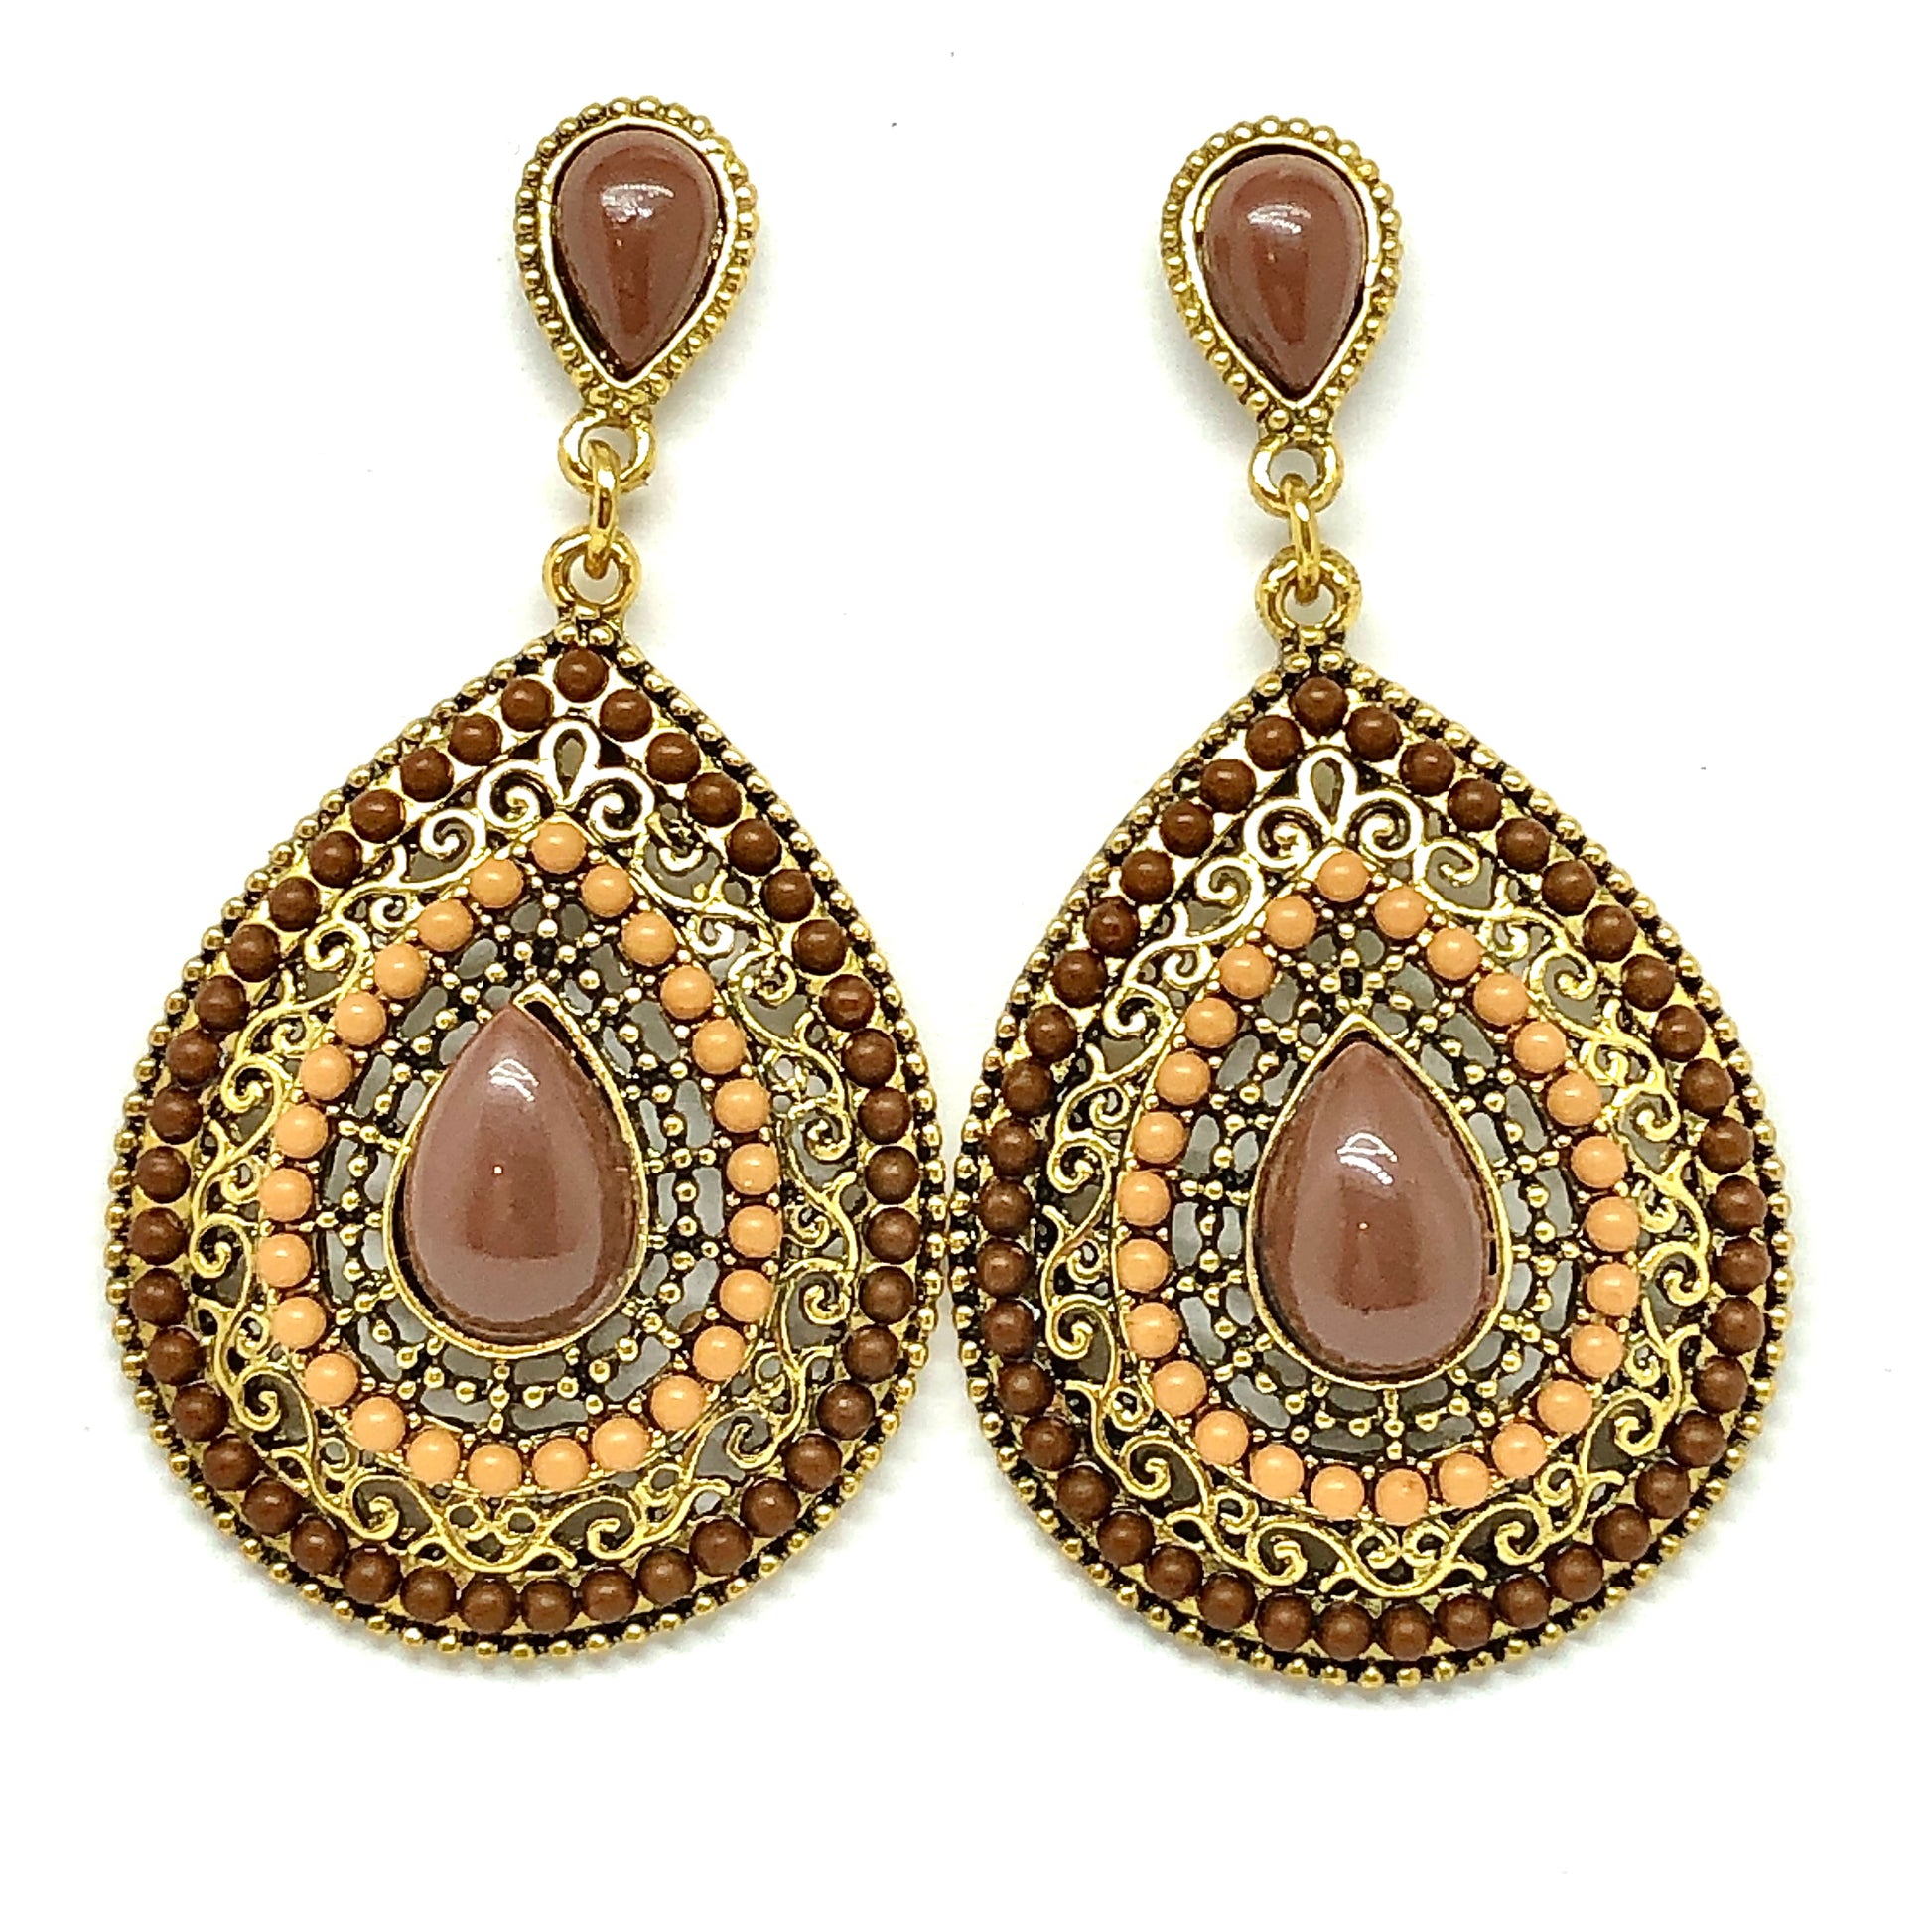 Blingschlingers - Womens Boho Style Cut-out Filigree Brown Gold Teardrop Dangle Earrings